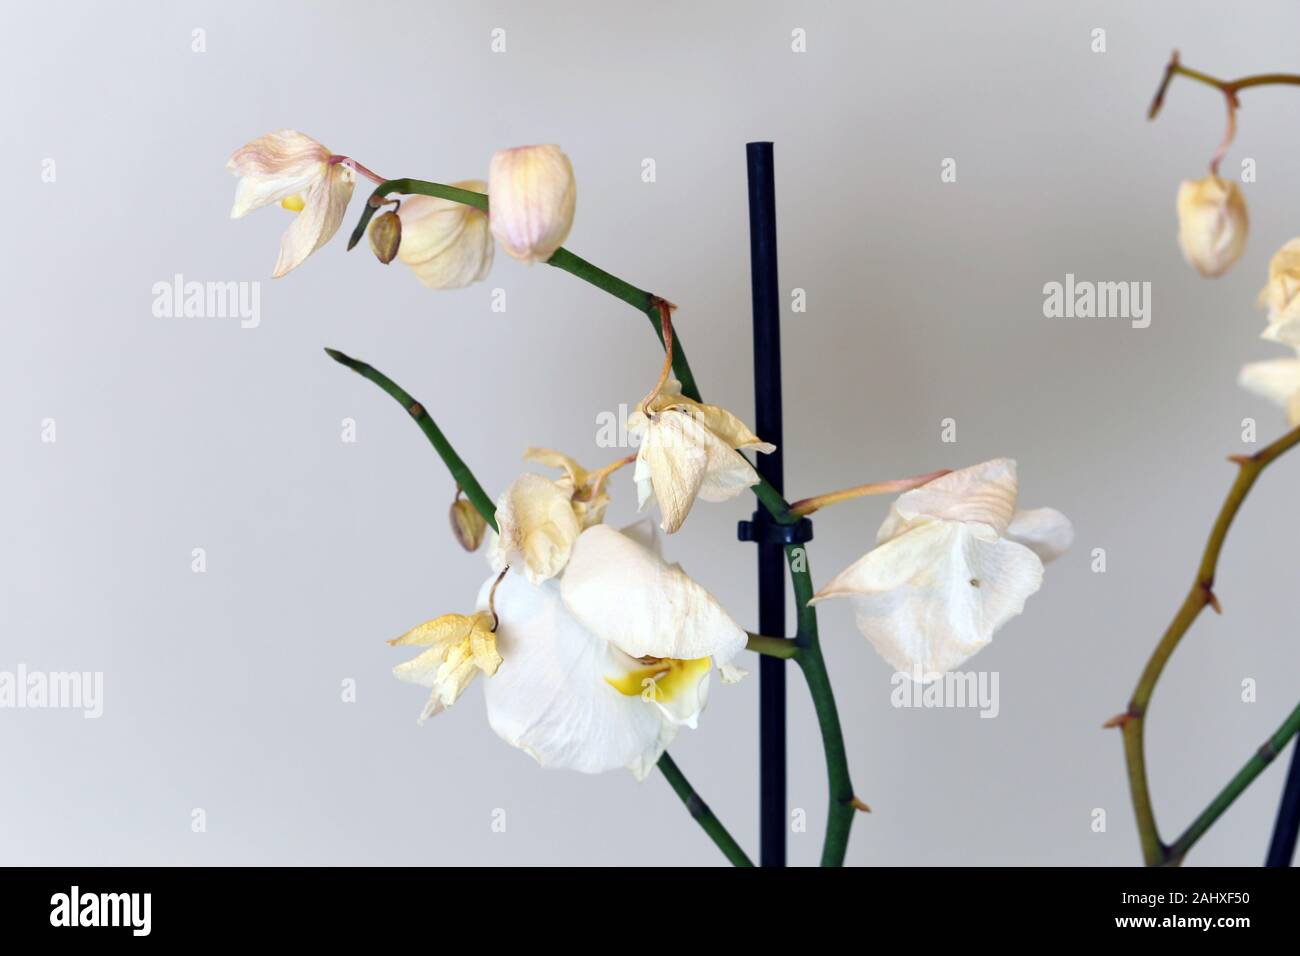 Secco, morti bianche orchidee phaleonopsis con sfondo bianco. Questi fiori utilizzati per essere una bella parte di Scandinavian decorazione della casa ma sono morti. Foto Stock